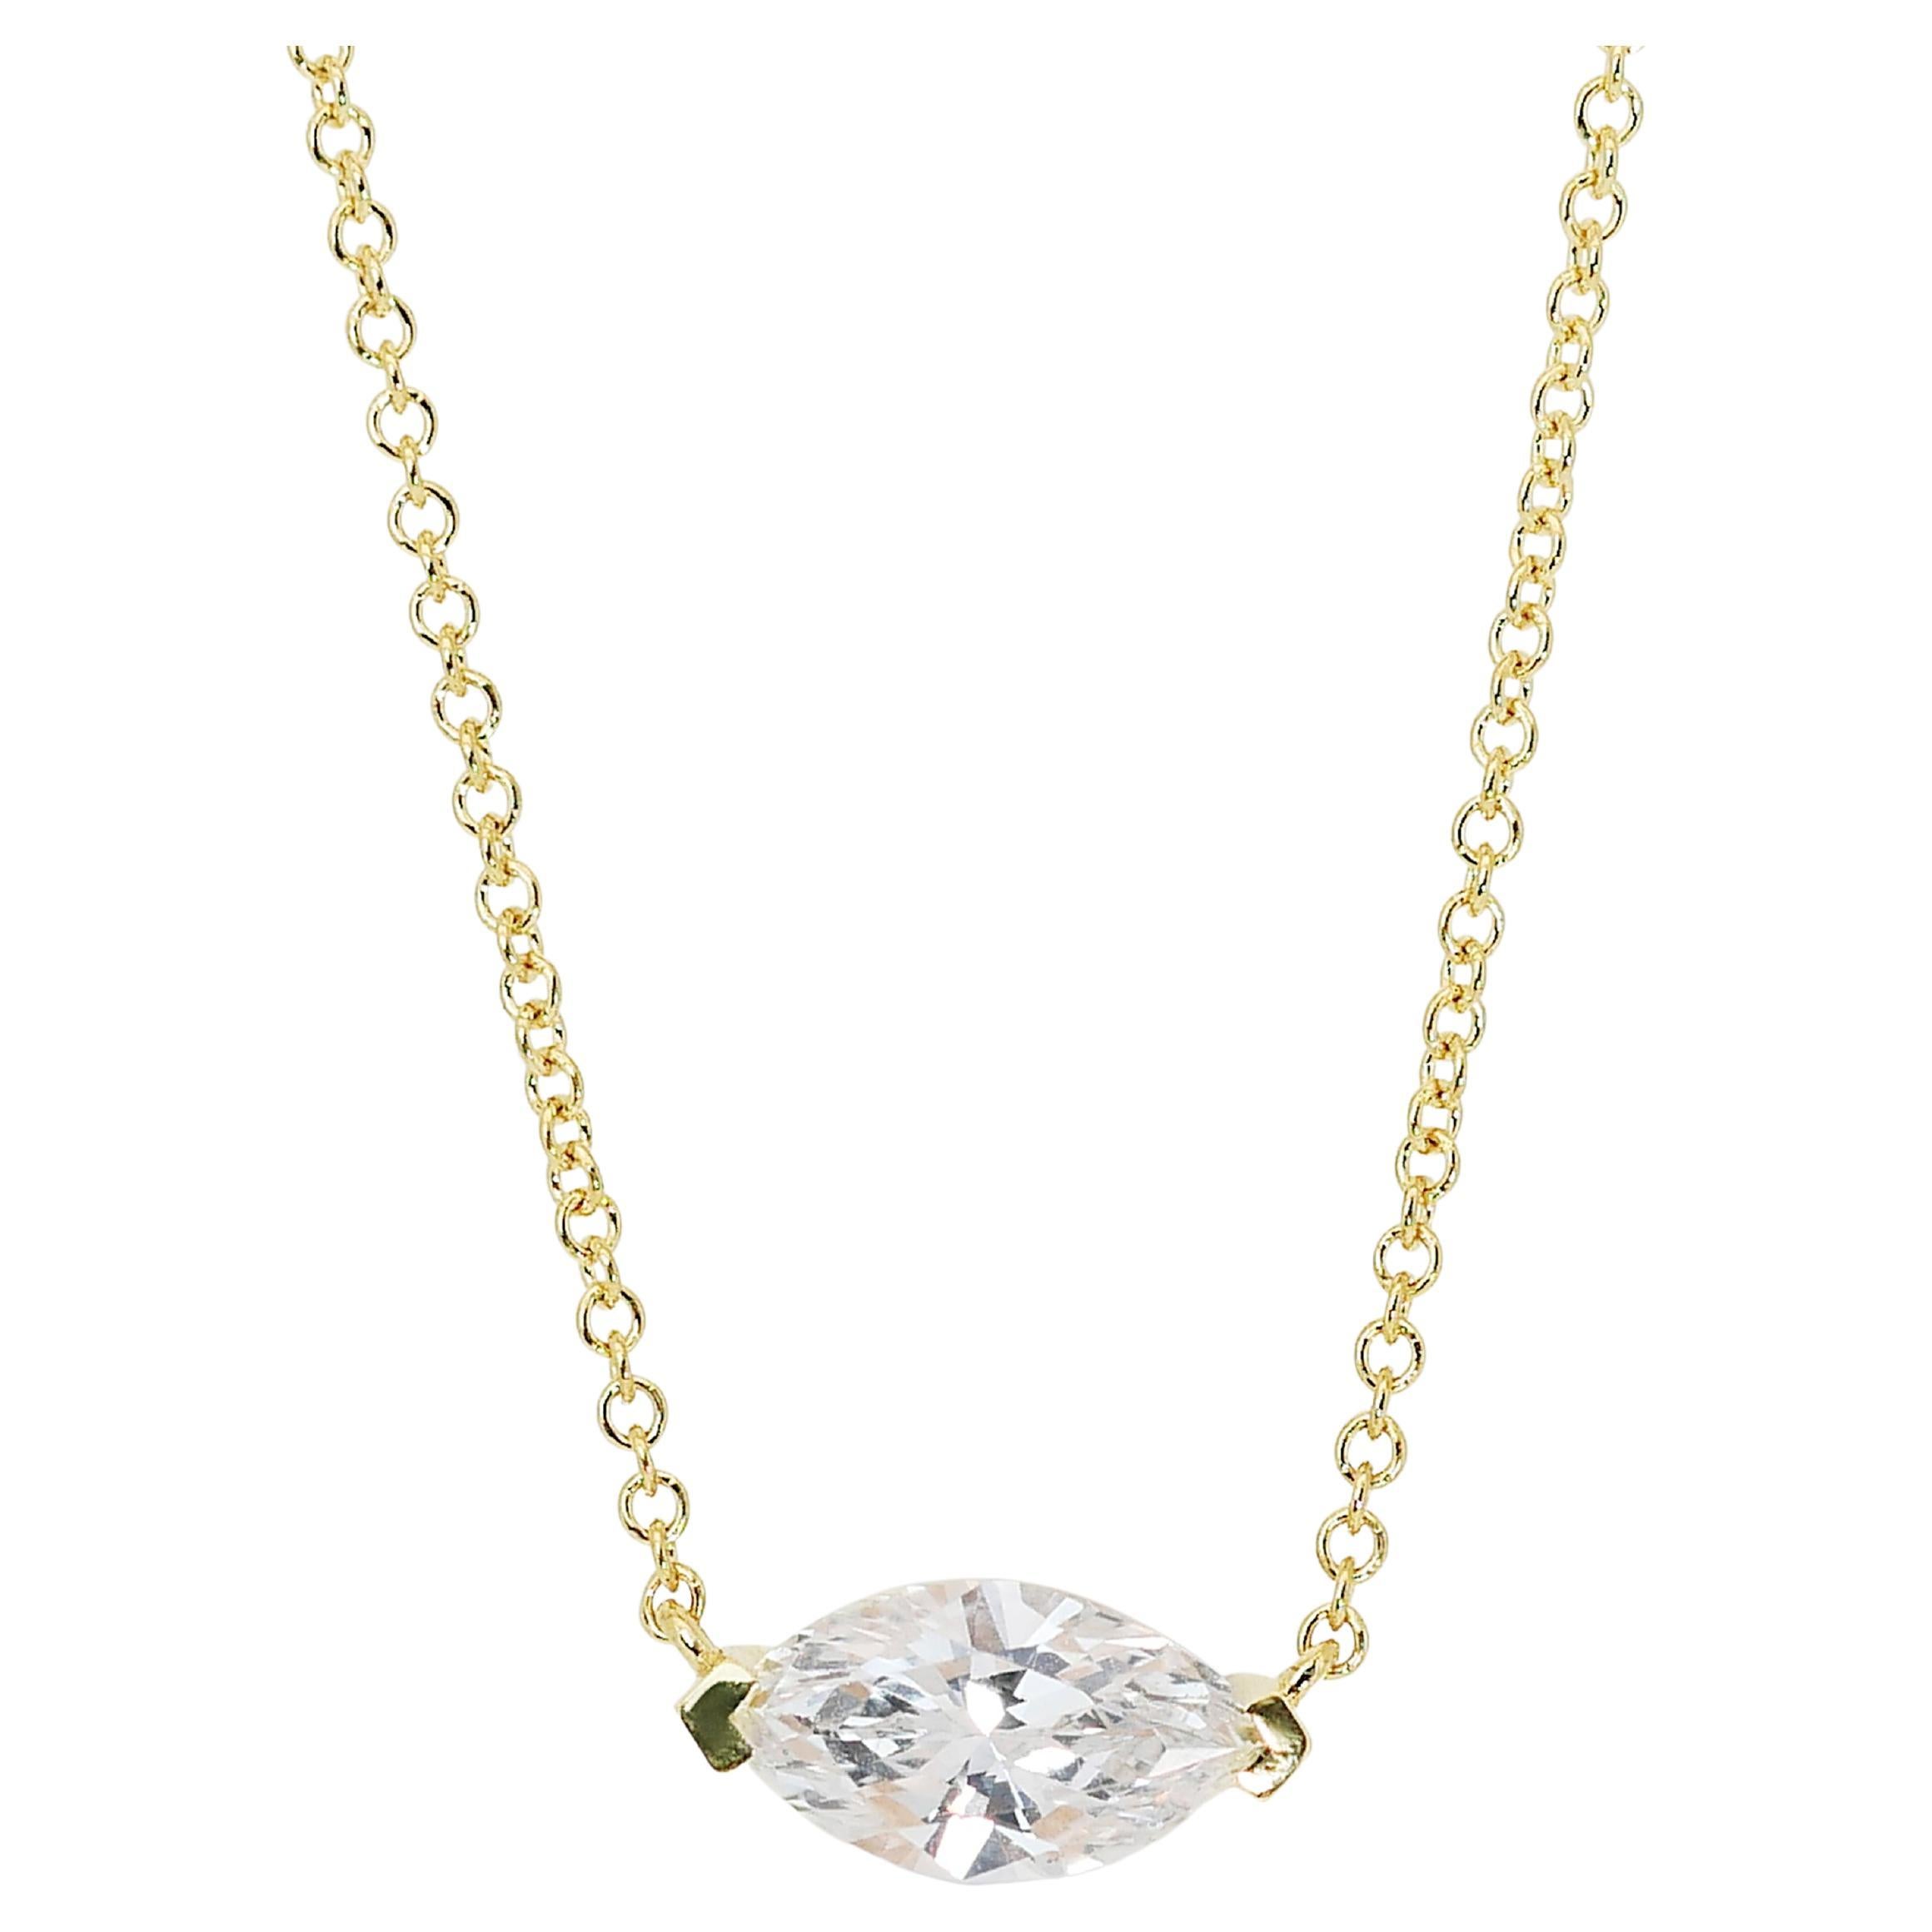 Élégant collier solitaire avec pendentif en diamants de 0,70 carat, certifié GIA